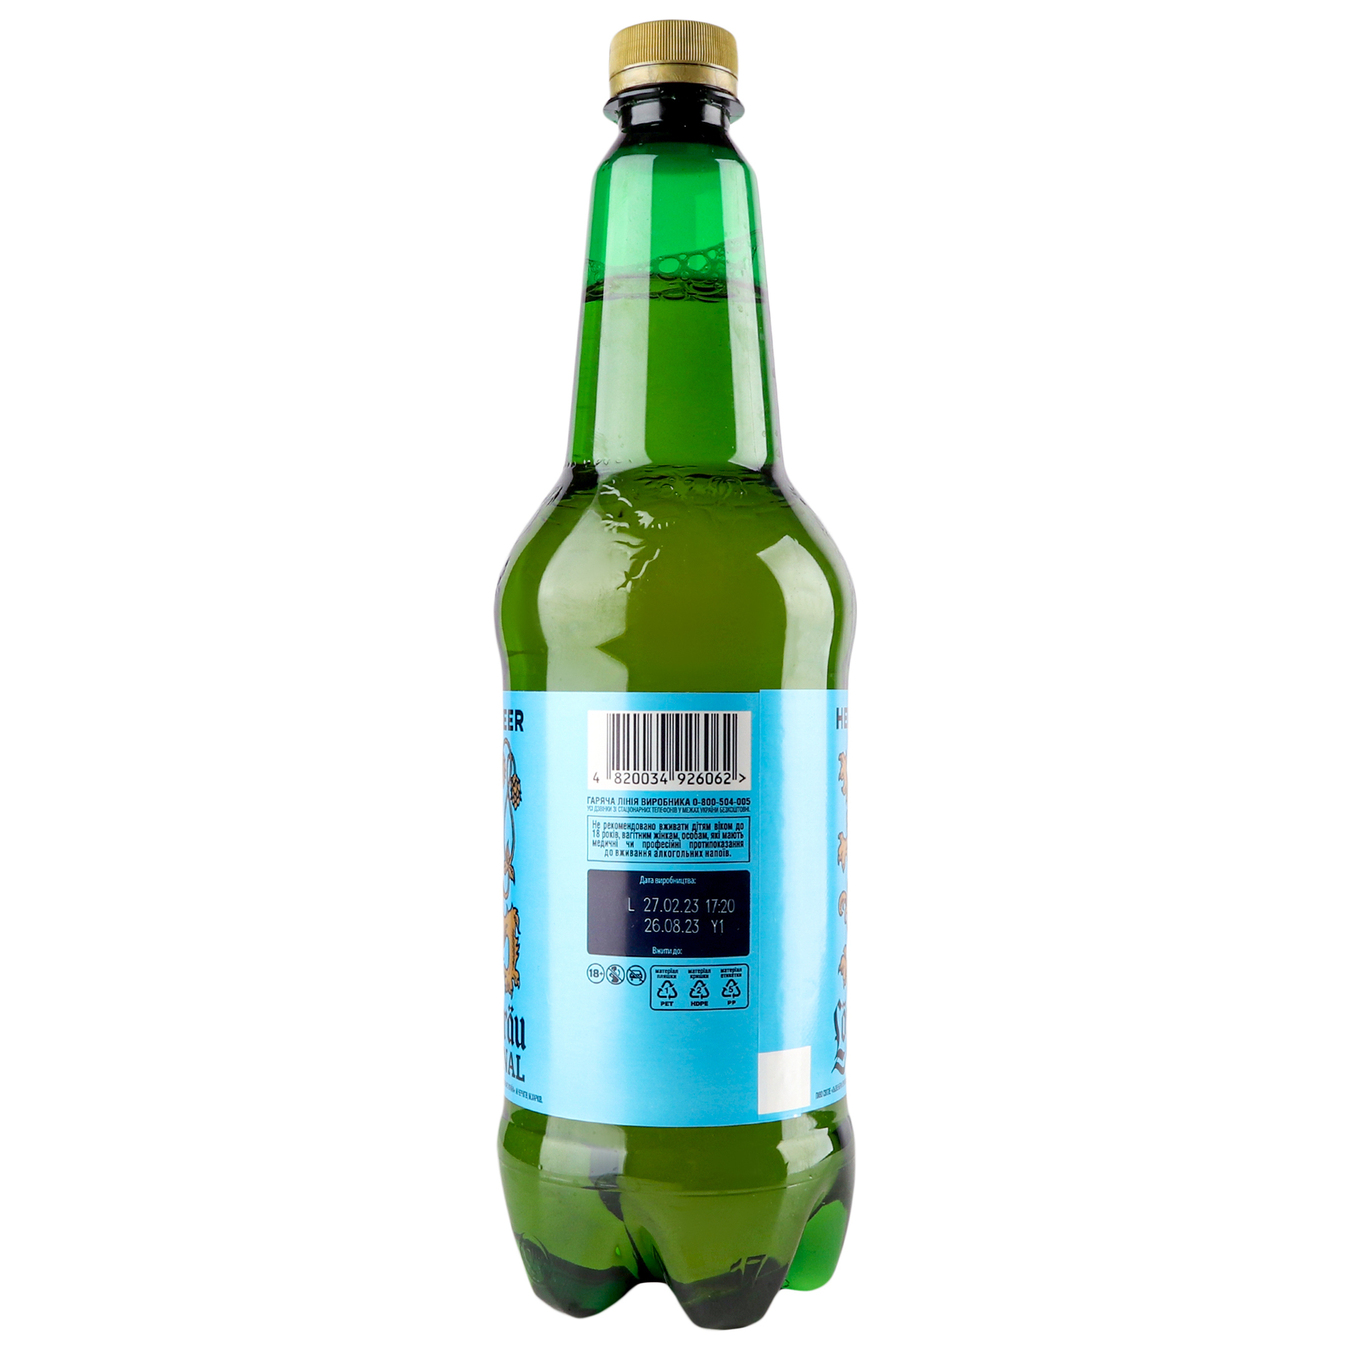 Beer Lowenbrau Original light pasteurized 5.1% 0.9 l 4